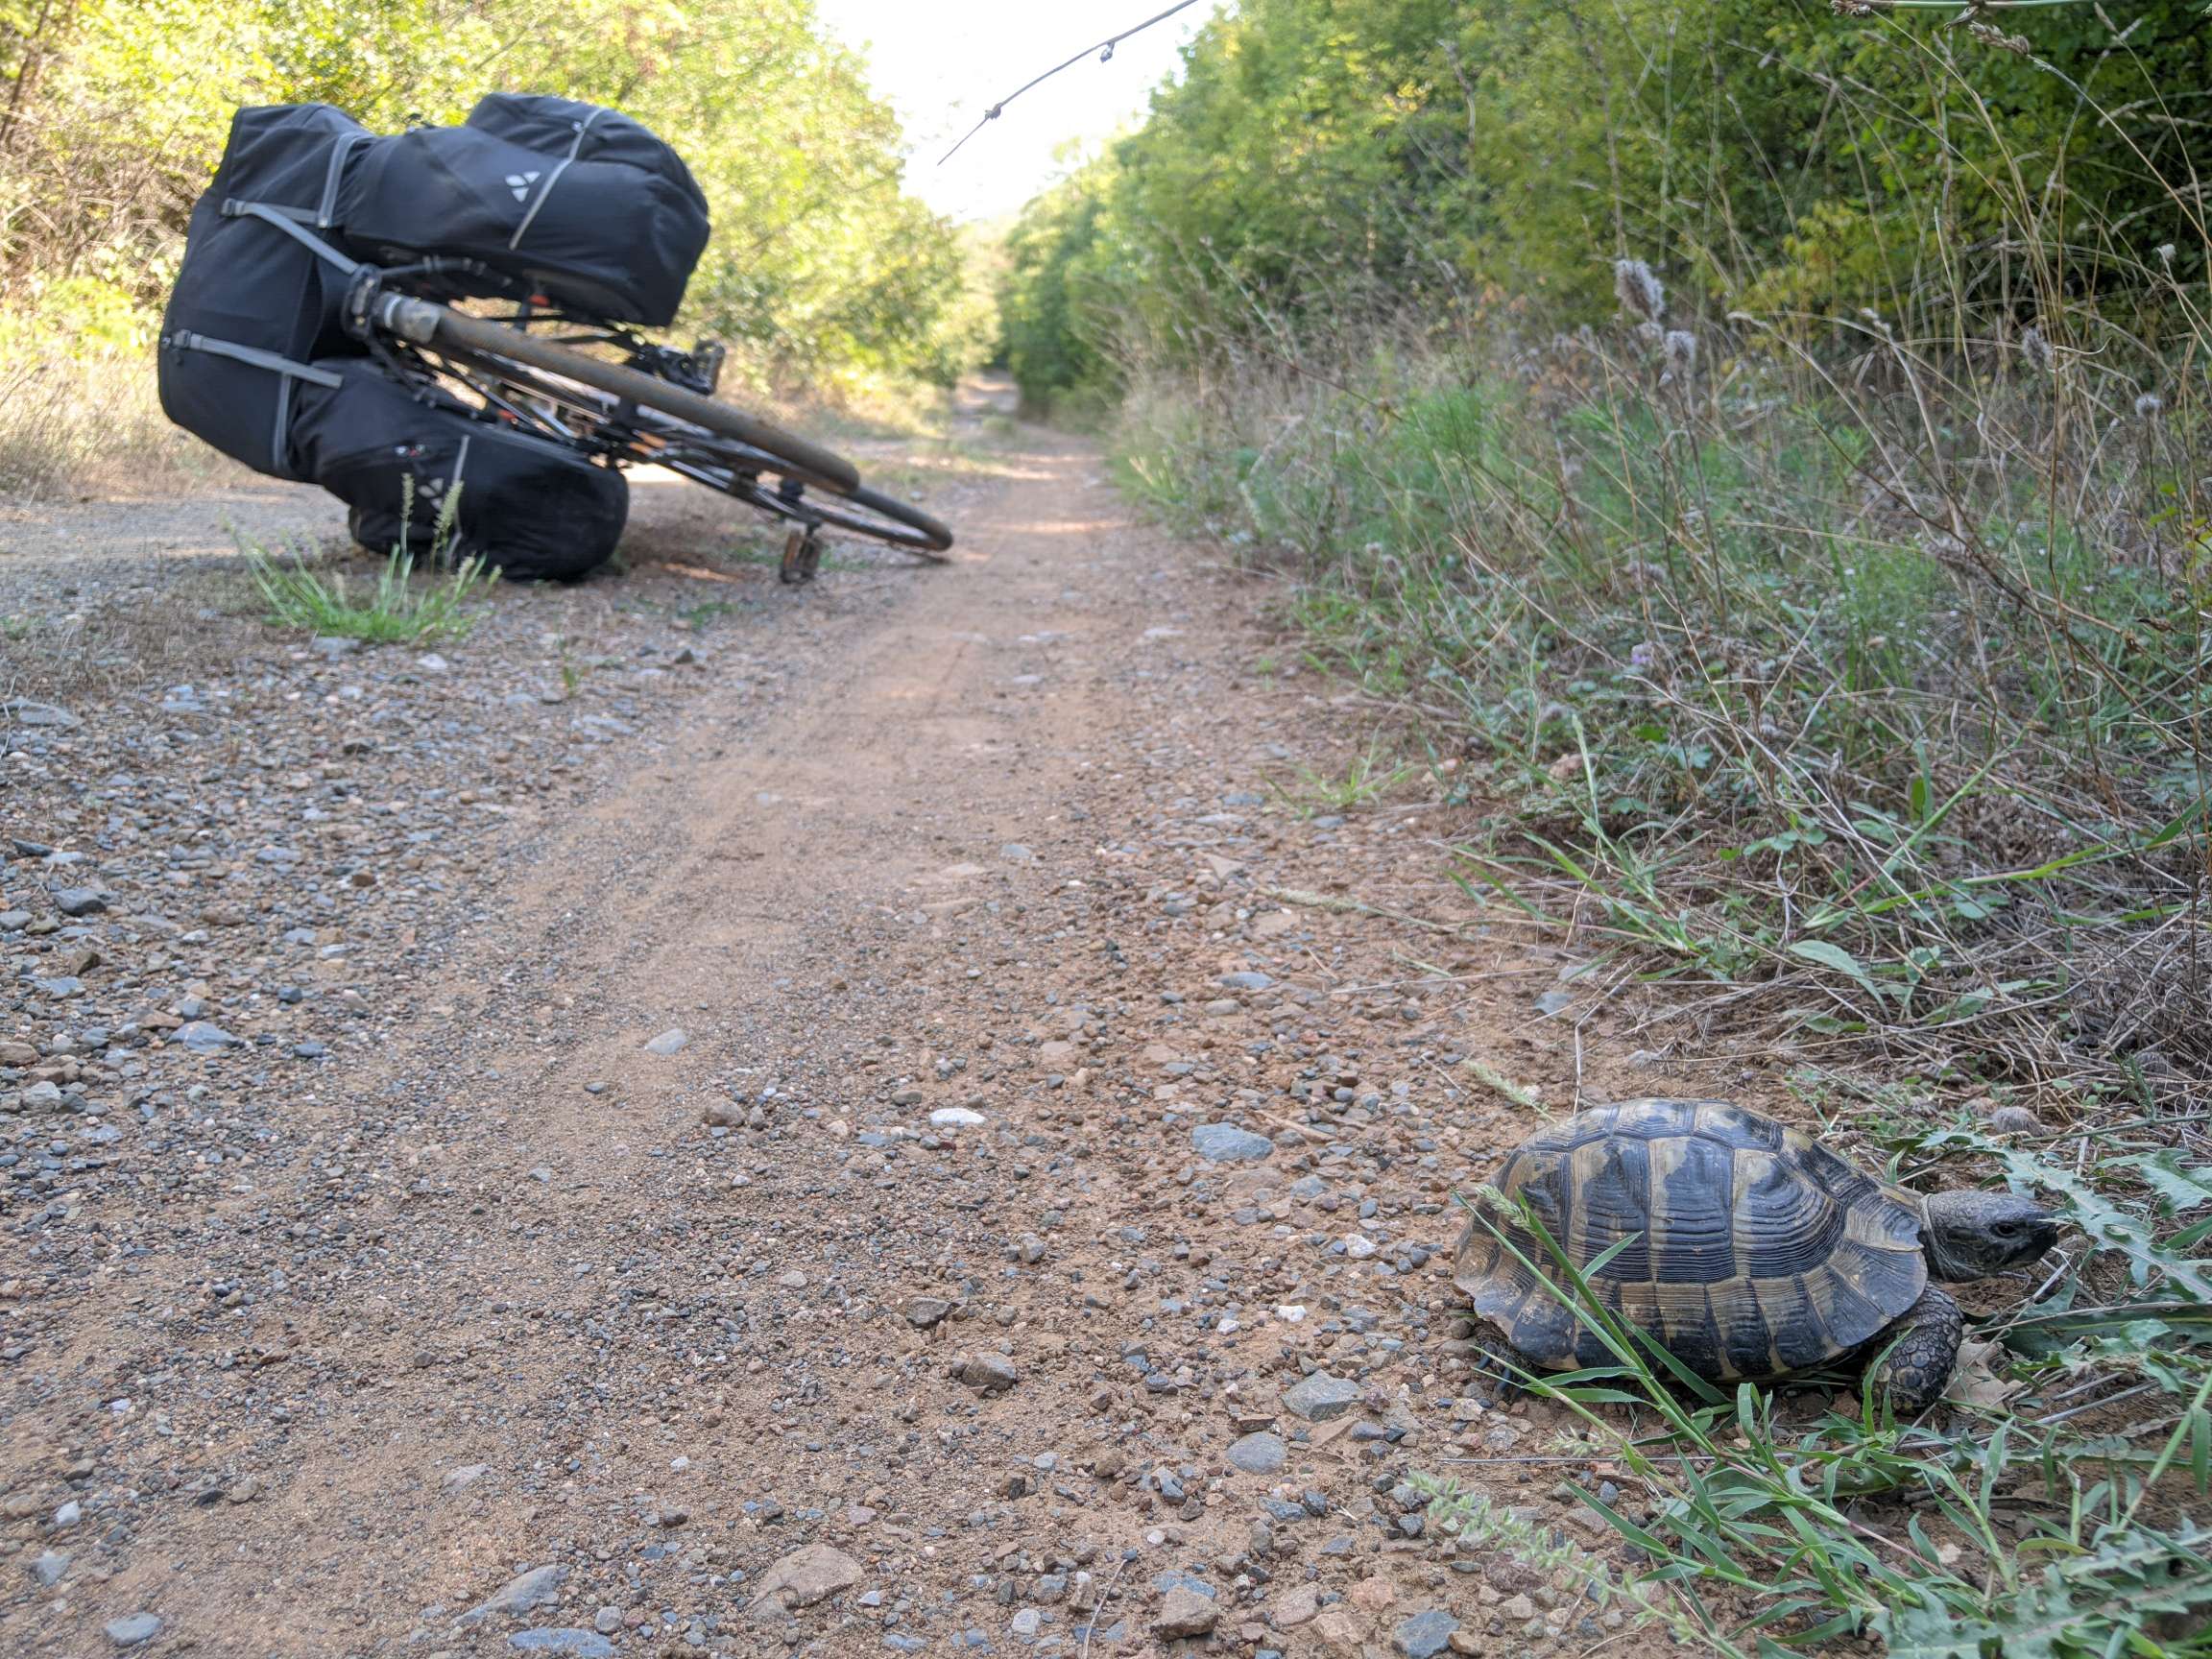 Im Vordergrund kriecht eine Schildkröte am Wegesrand, im Hintergrund liegt ein bepacktes Fahrrad auf dem Weg